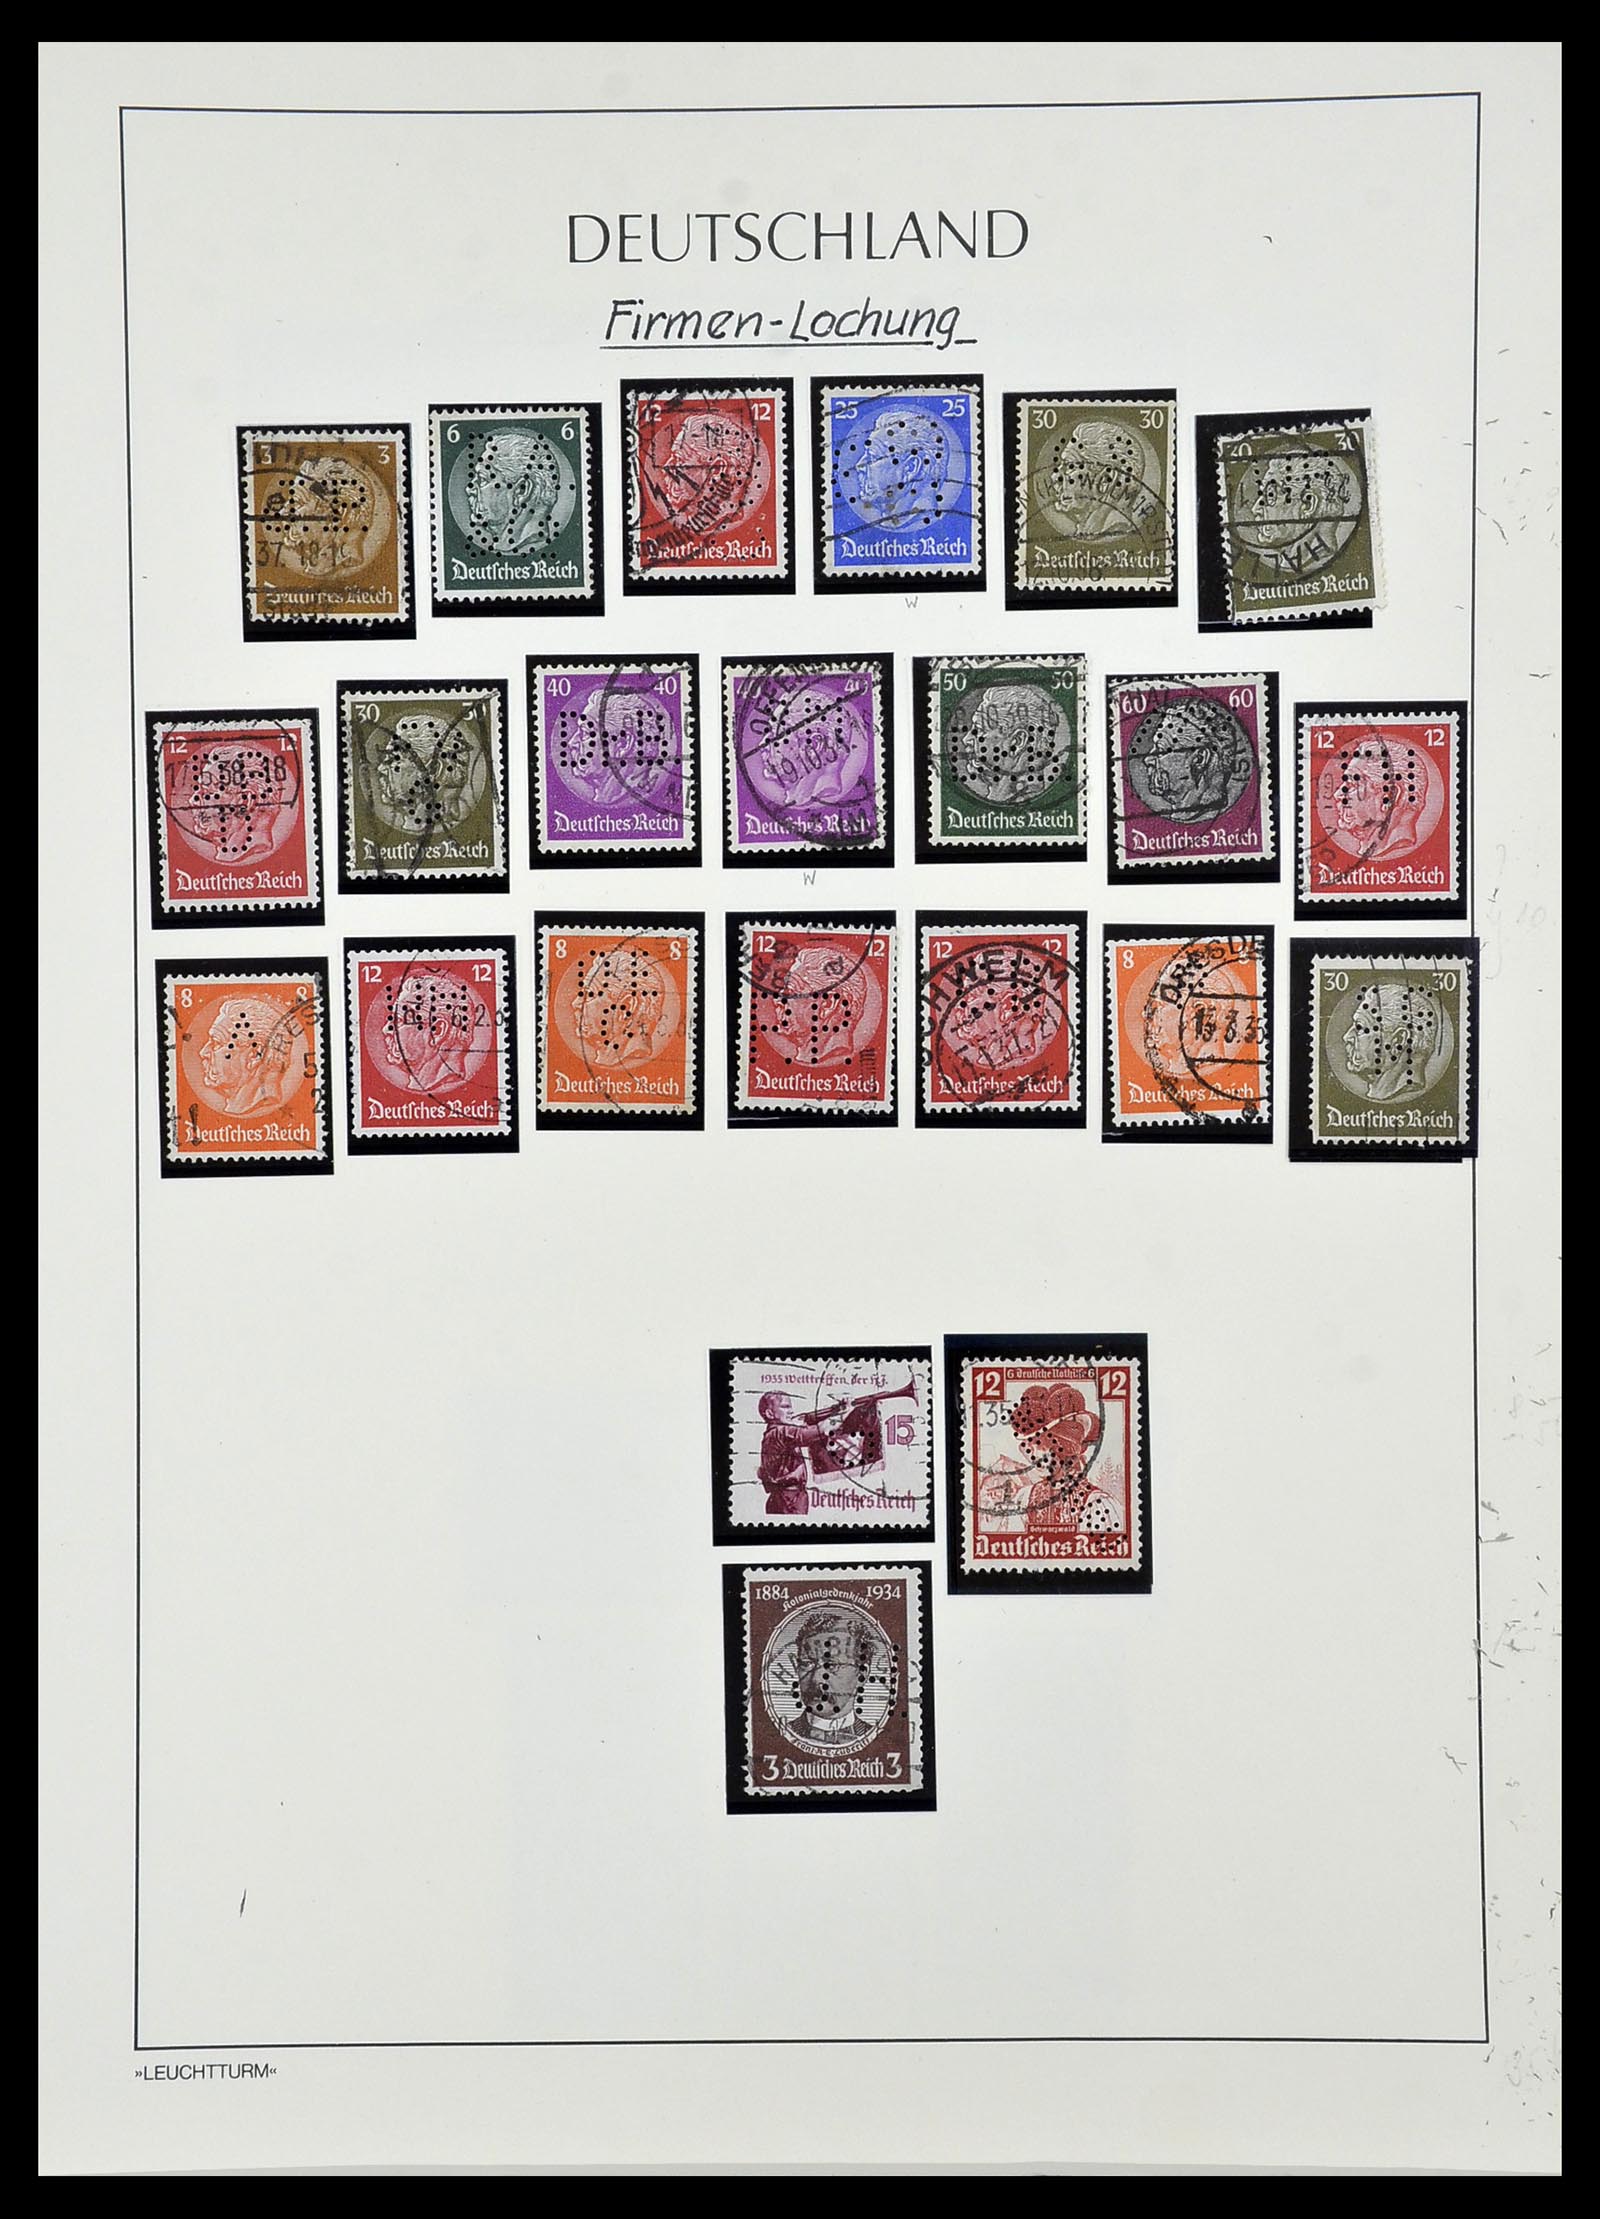 34409 023 - Stamp Collection 34409 German Reich perfins.